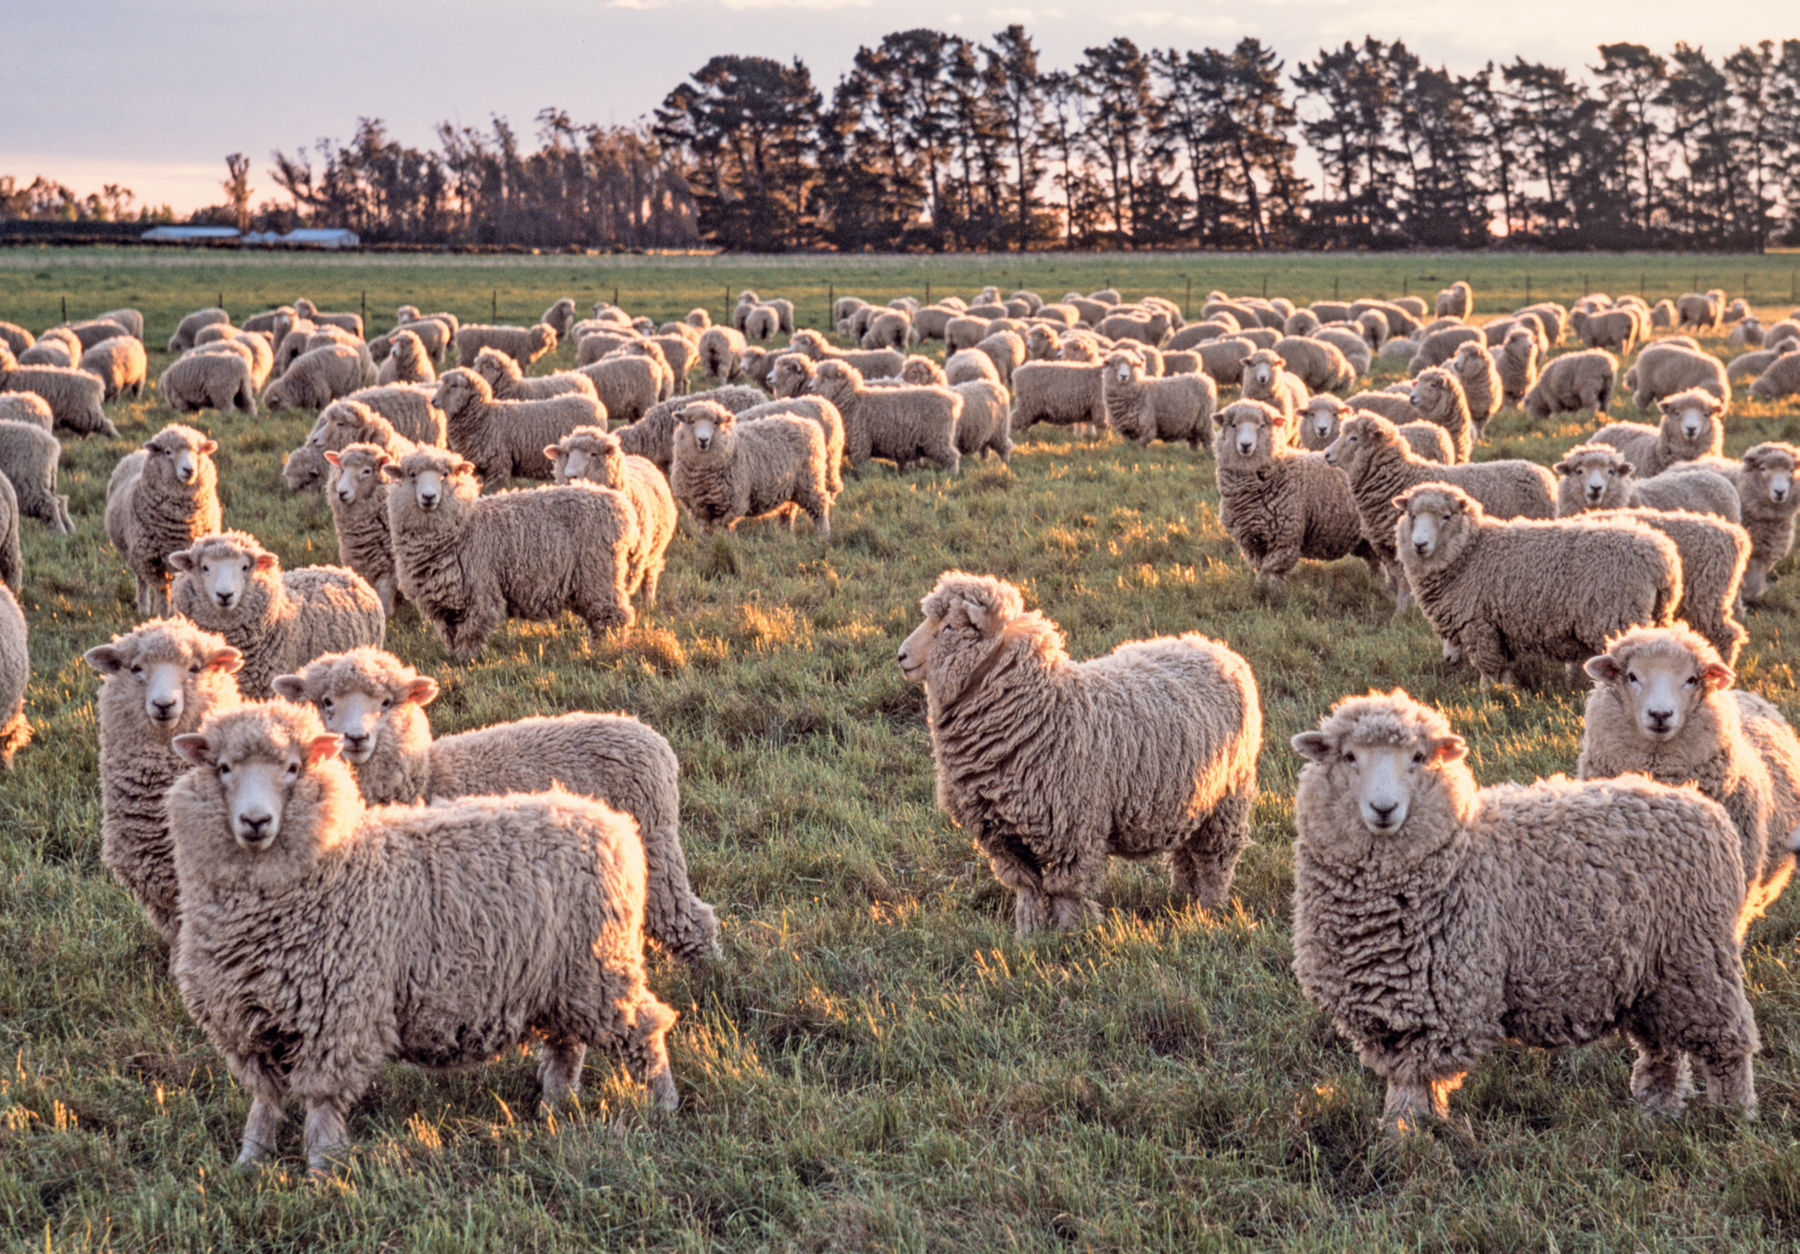 Fotografia. Vista de uma paisagem rural. No primeiro plano, campo com pastagem e diversas ovelhas reunidas. No segundo plano, ao fundo, árvores altas.